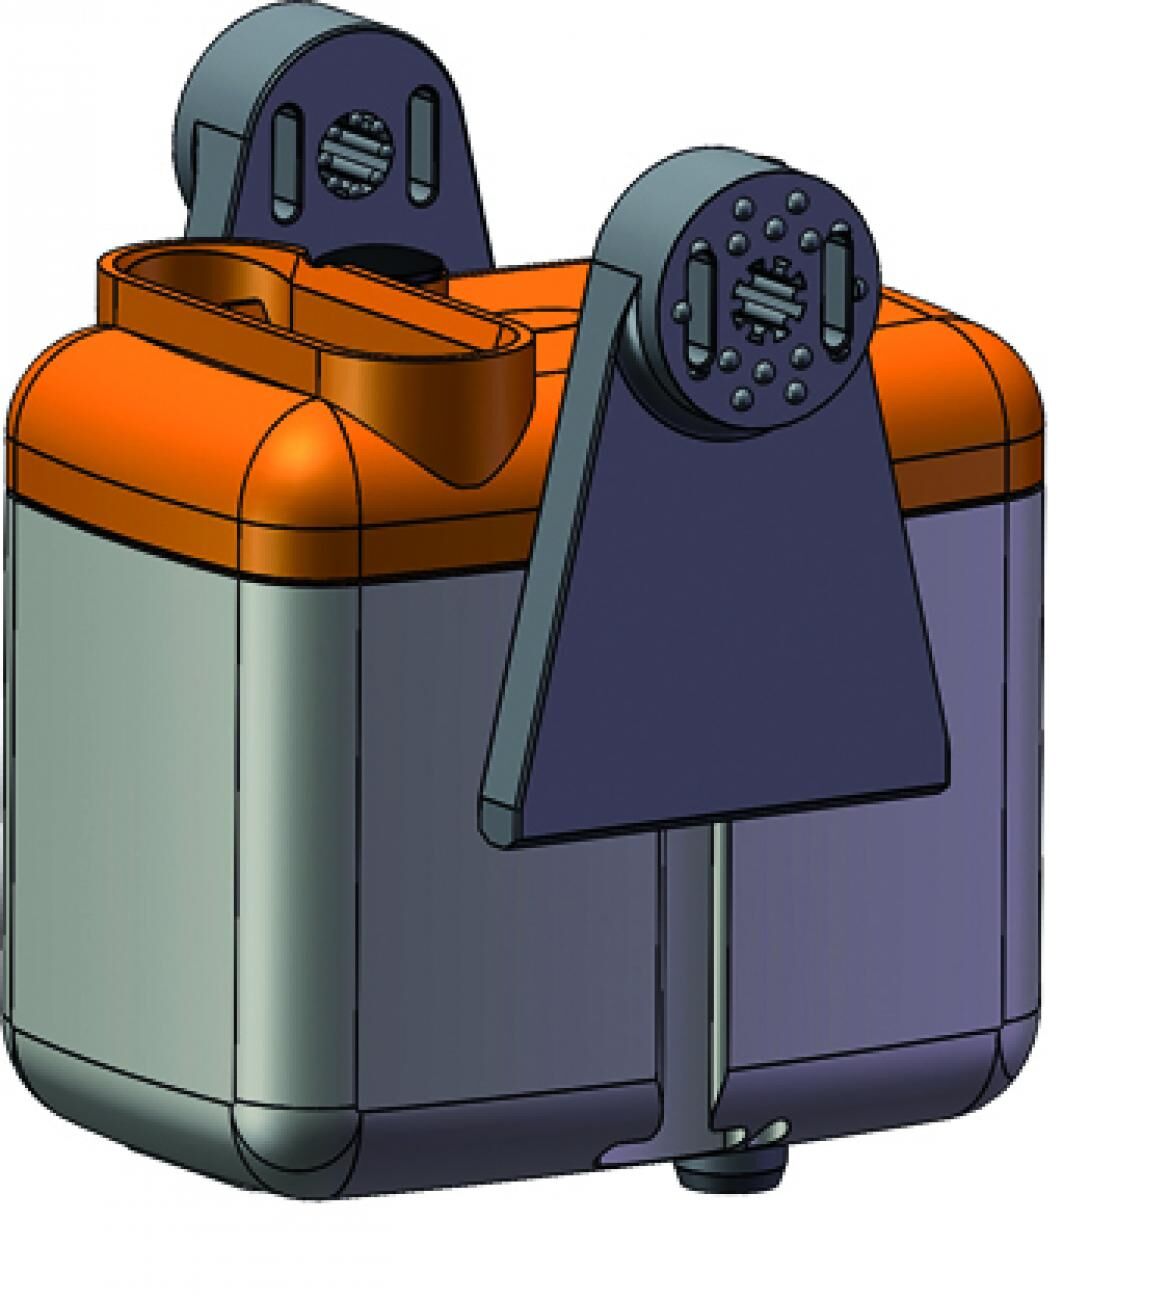 Mini pompe de relevage pour climatiseur DE05LC4400 Sauermann